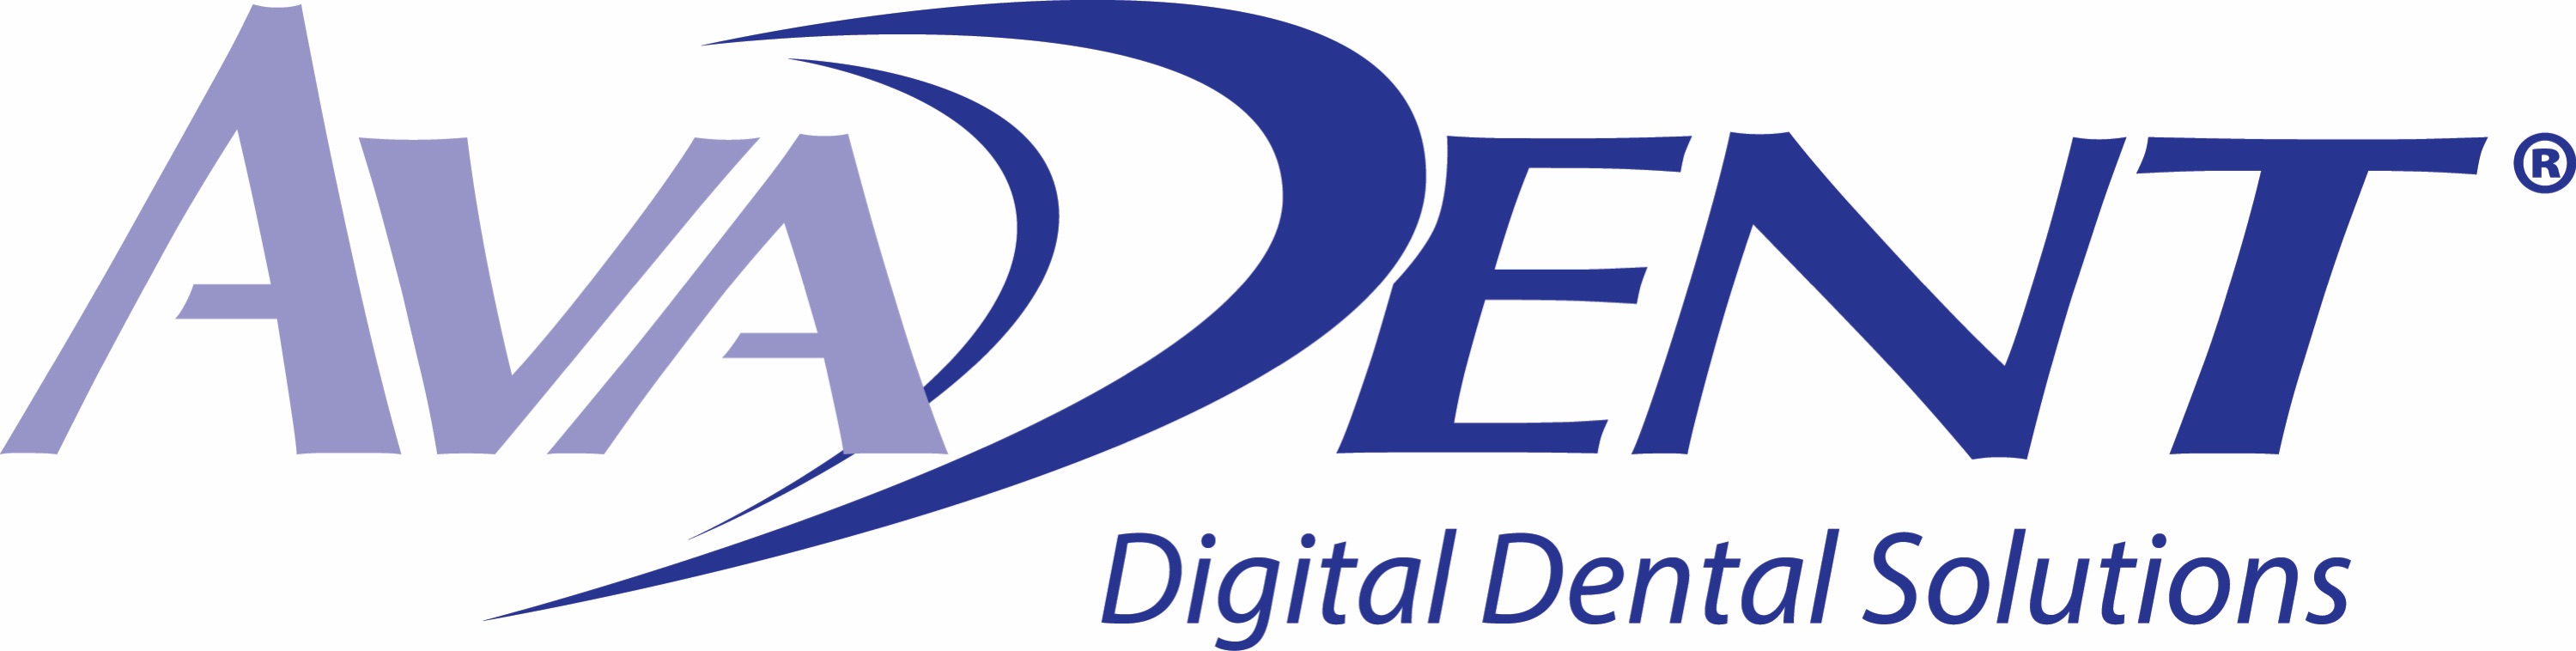 AvaDent_Digital_Dental_Solutions